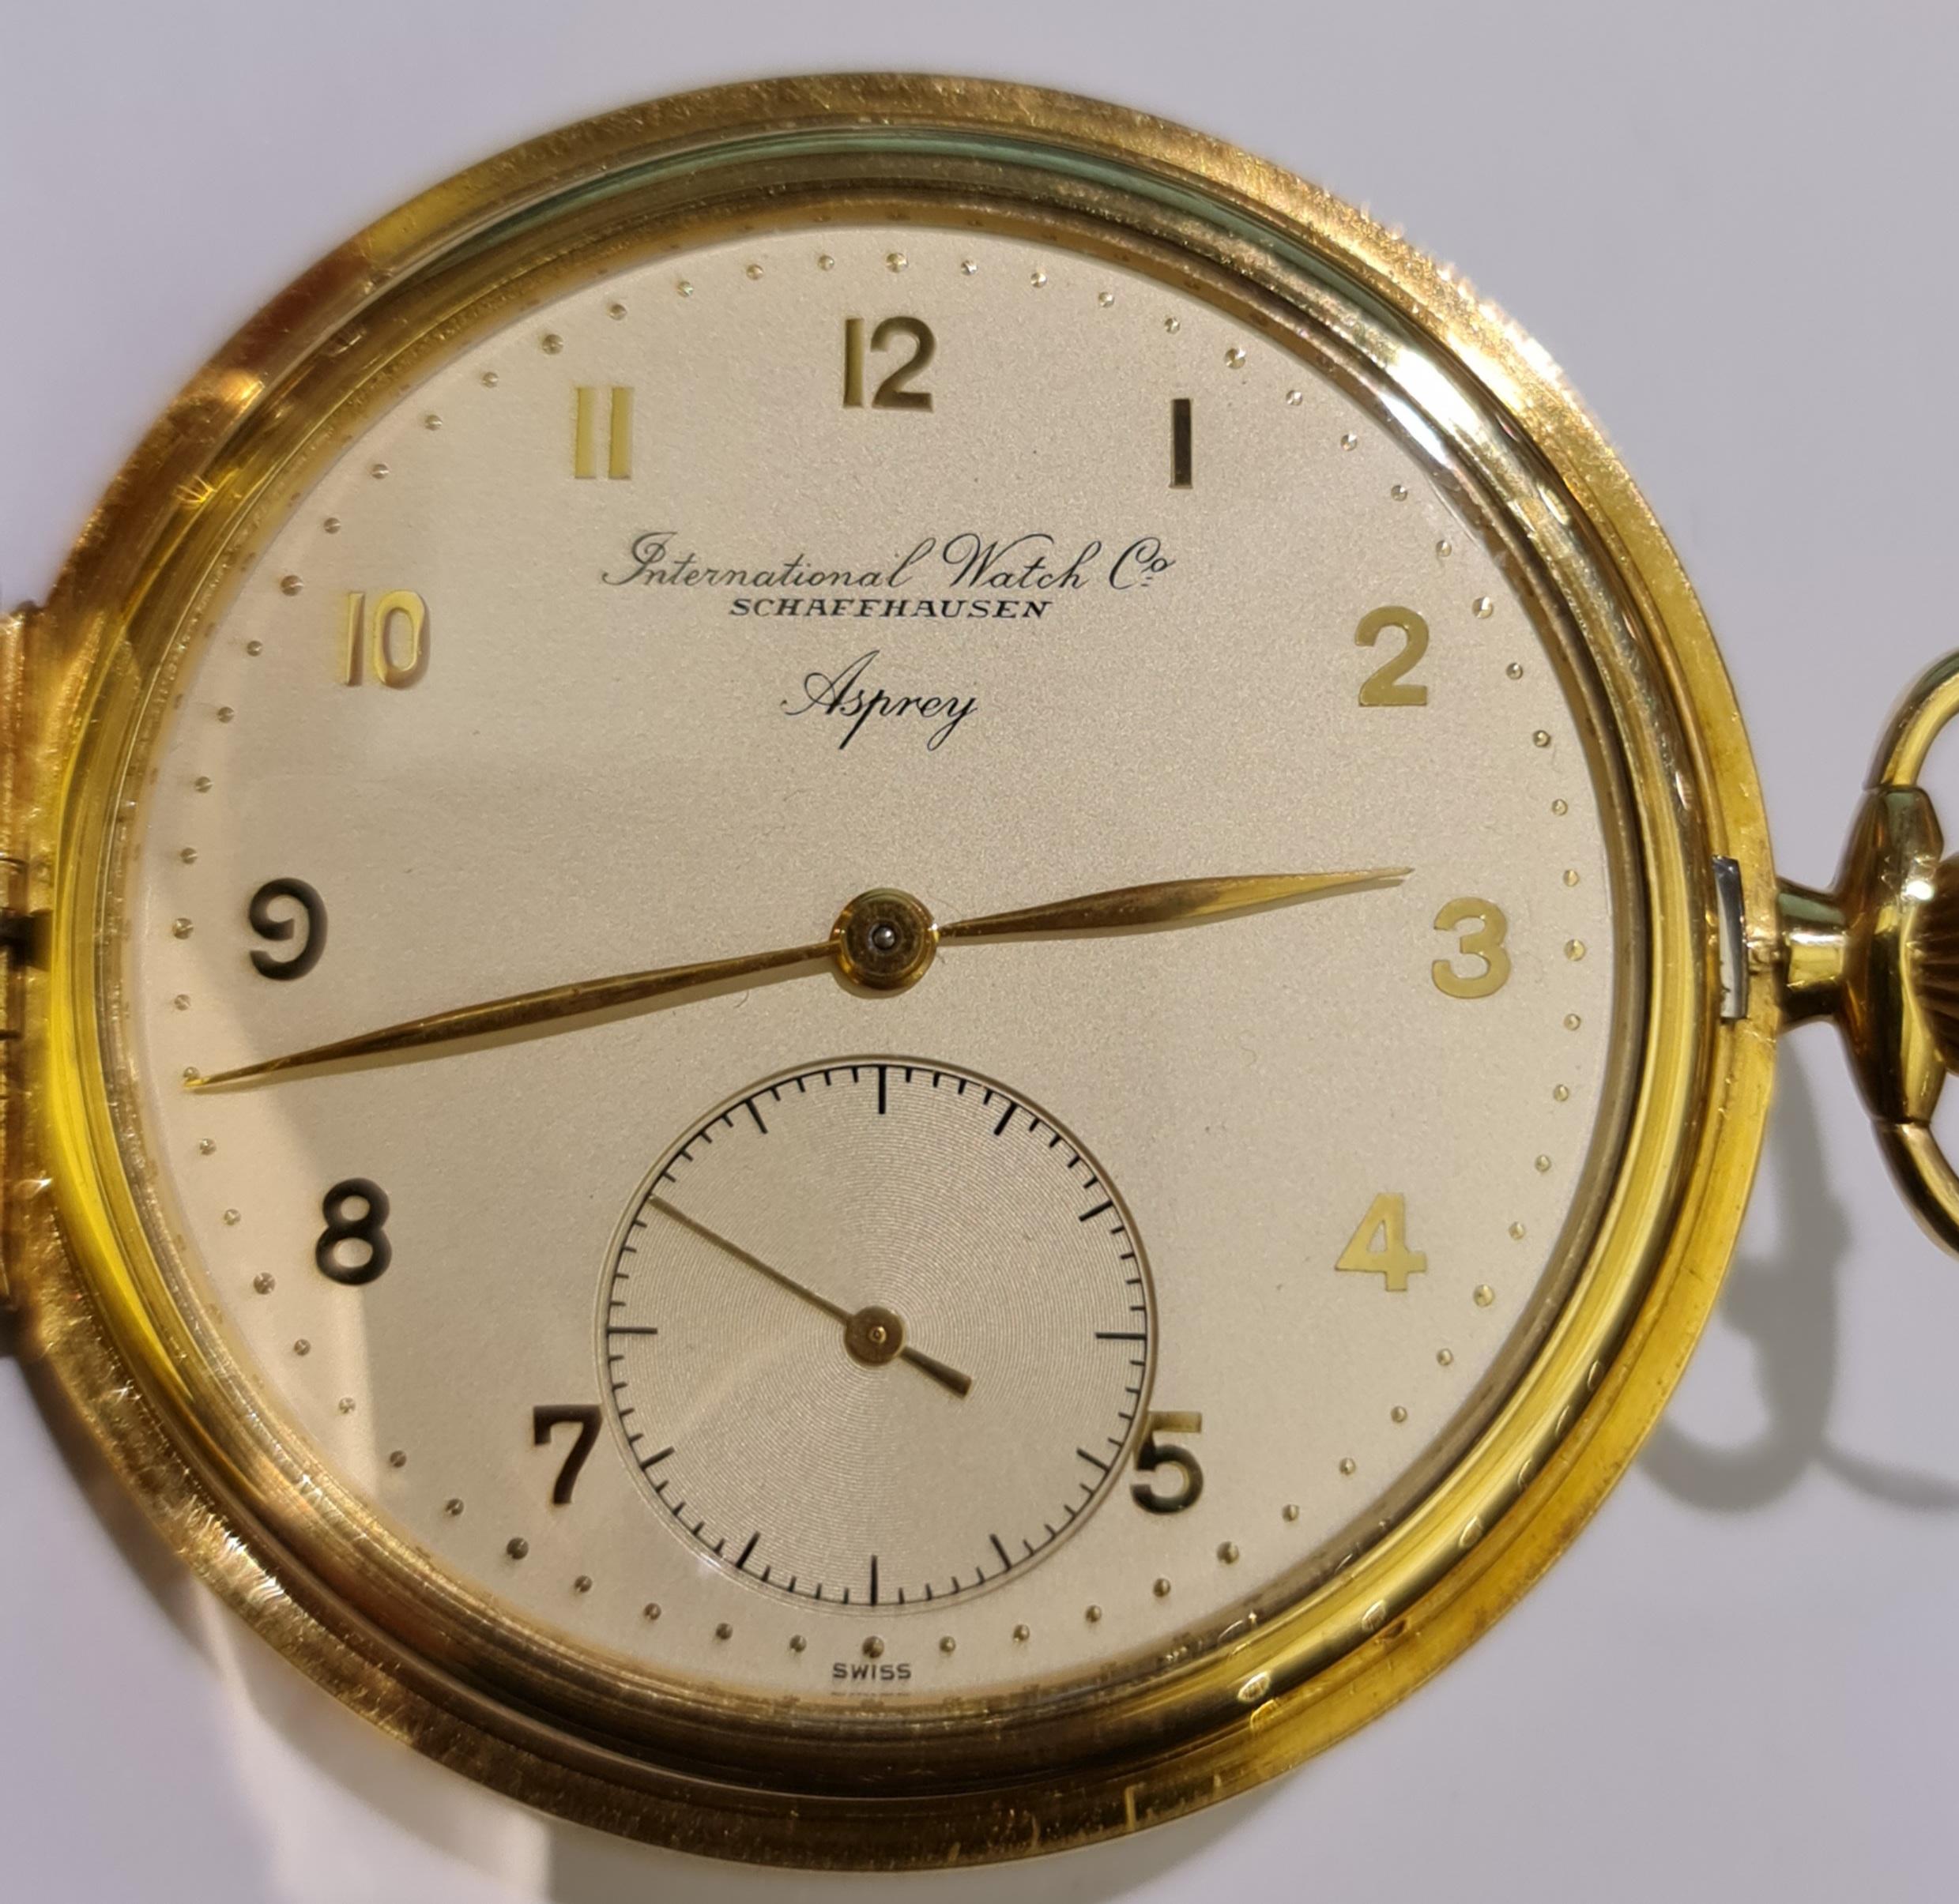 IWC Schaffhausen Asprey Savonette/Hunting Case Pocket Watch 18 Kt Gold For Sale 9